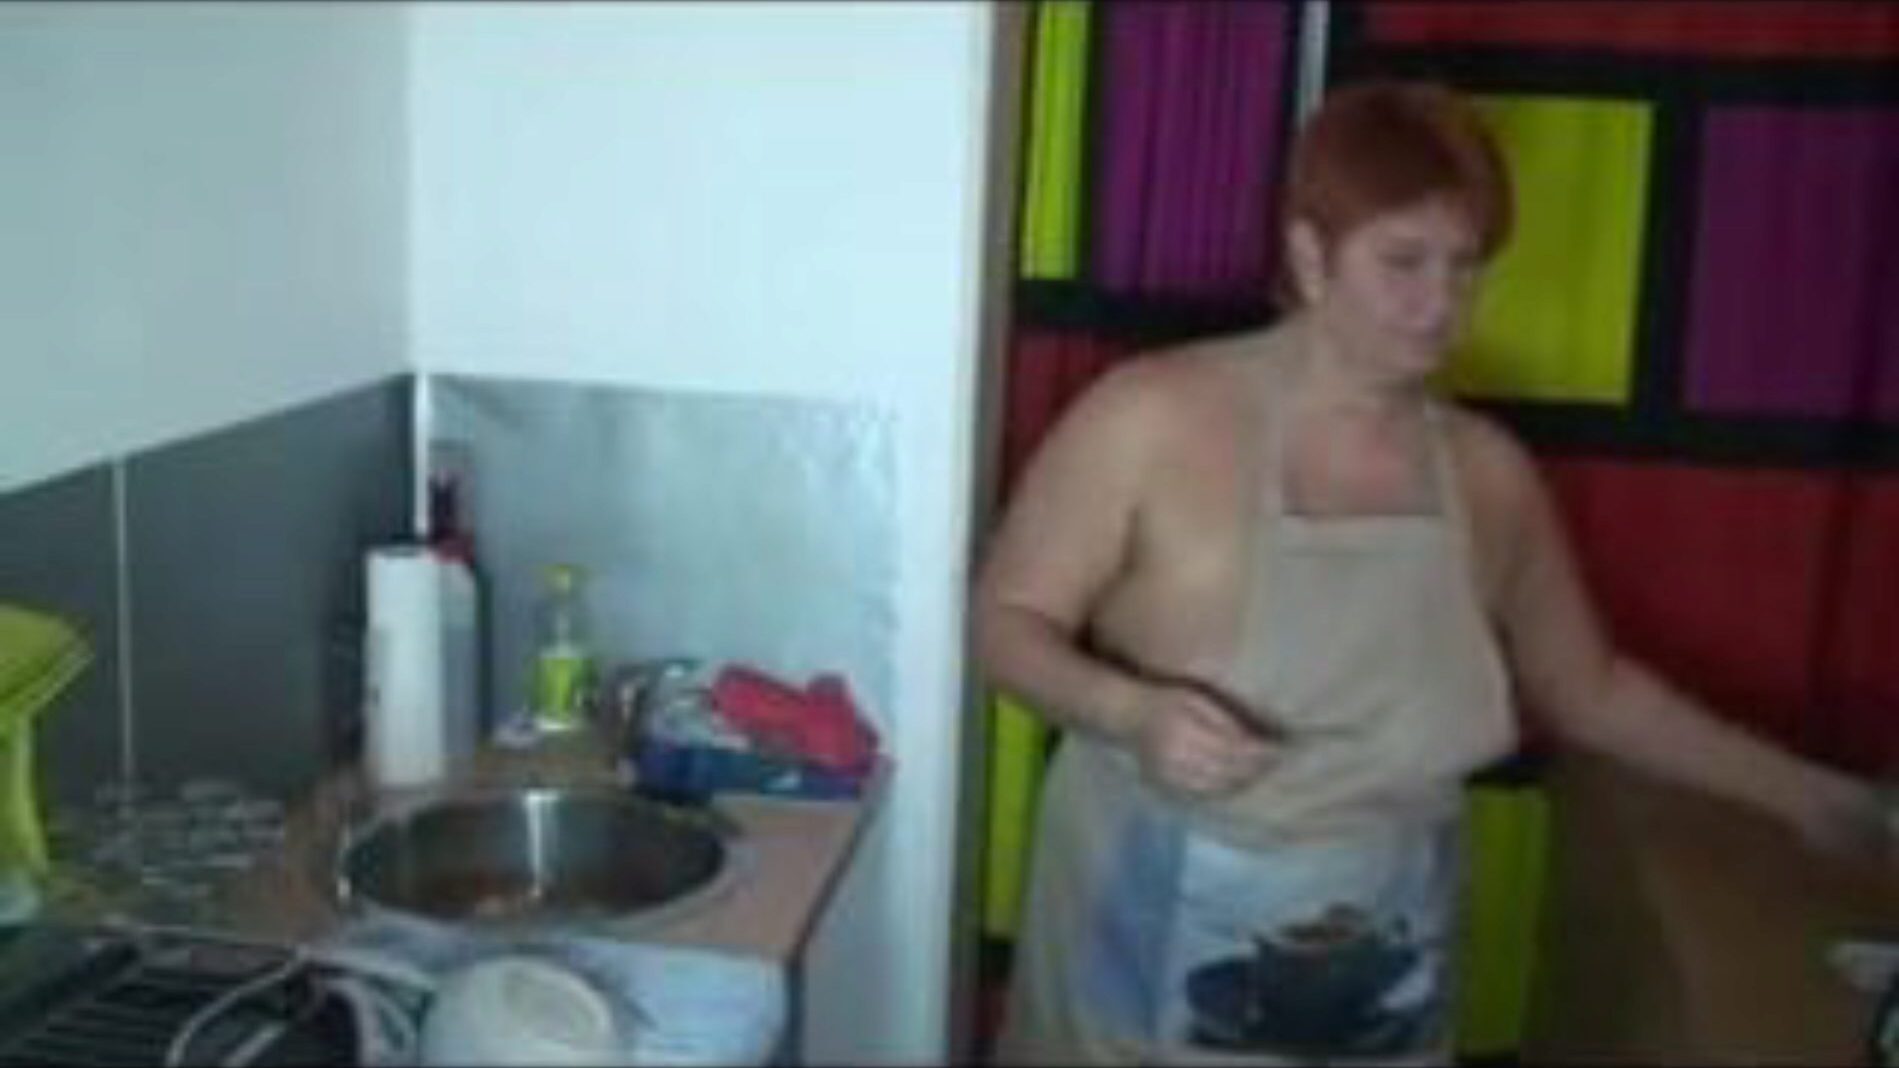 при мытье посуды на кухне, порно 55: xhamster часов при мытье посуды на кухне клип на xhamster, участок трубы гигантского секс с тоннами свободных немецких горячих и звучащих порно-порно